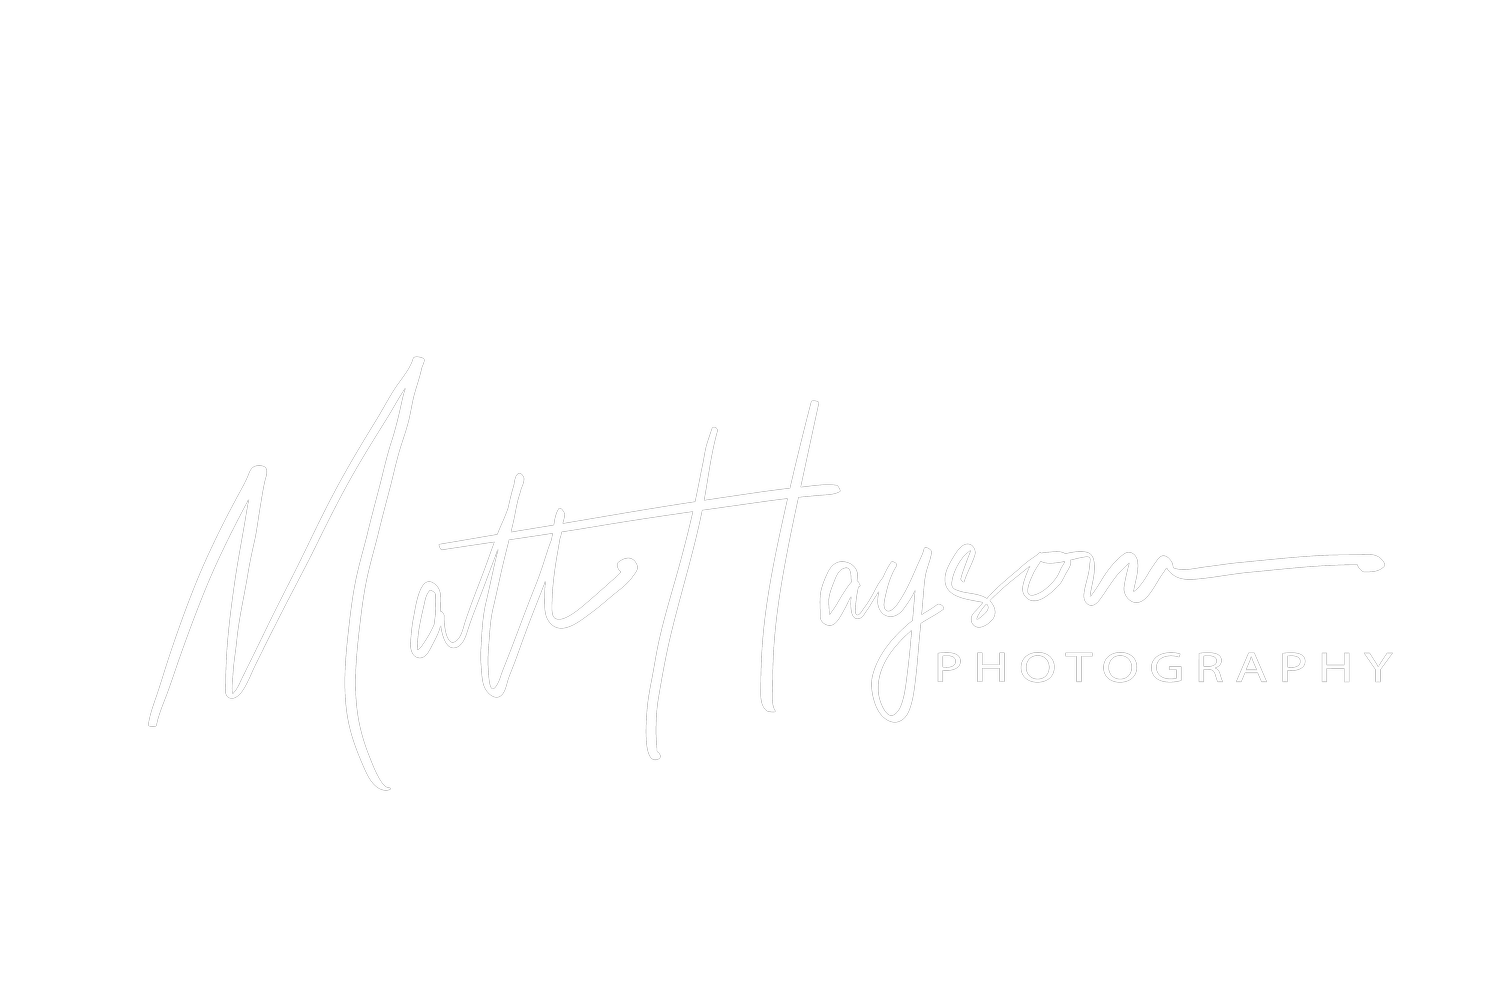 Matt Haysom Photography